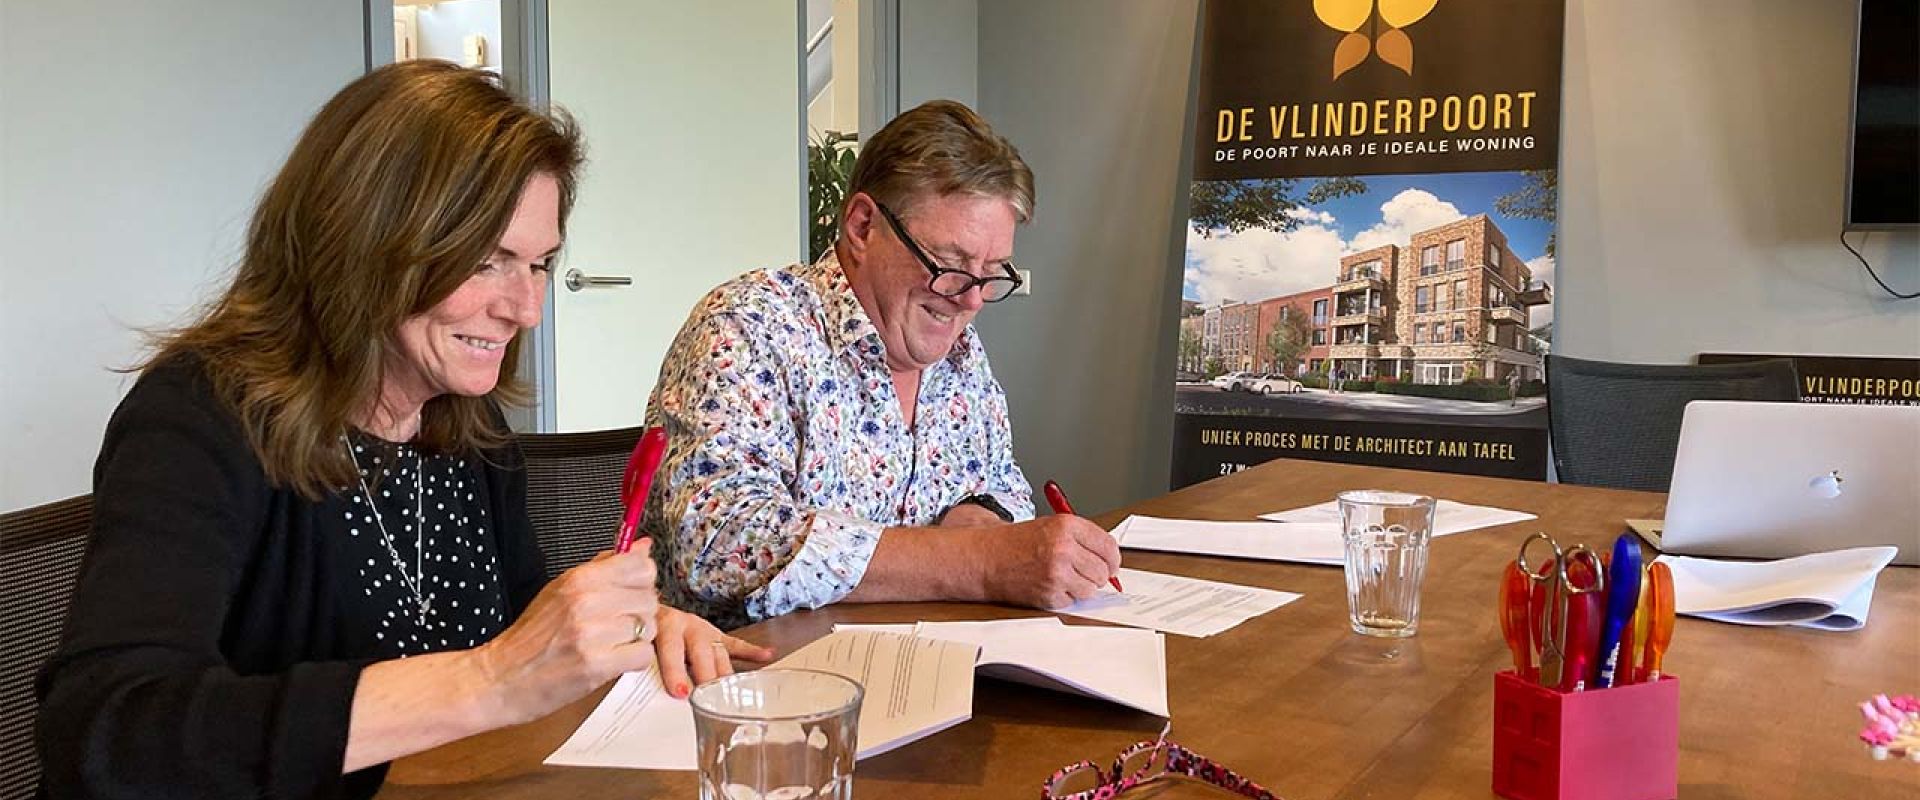 De Vlinderpoort in Rijswijk belooft één en al variatie